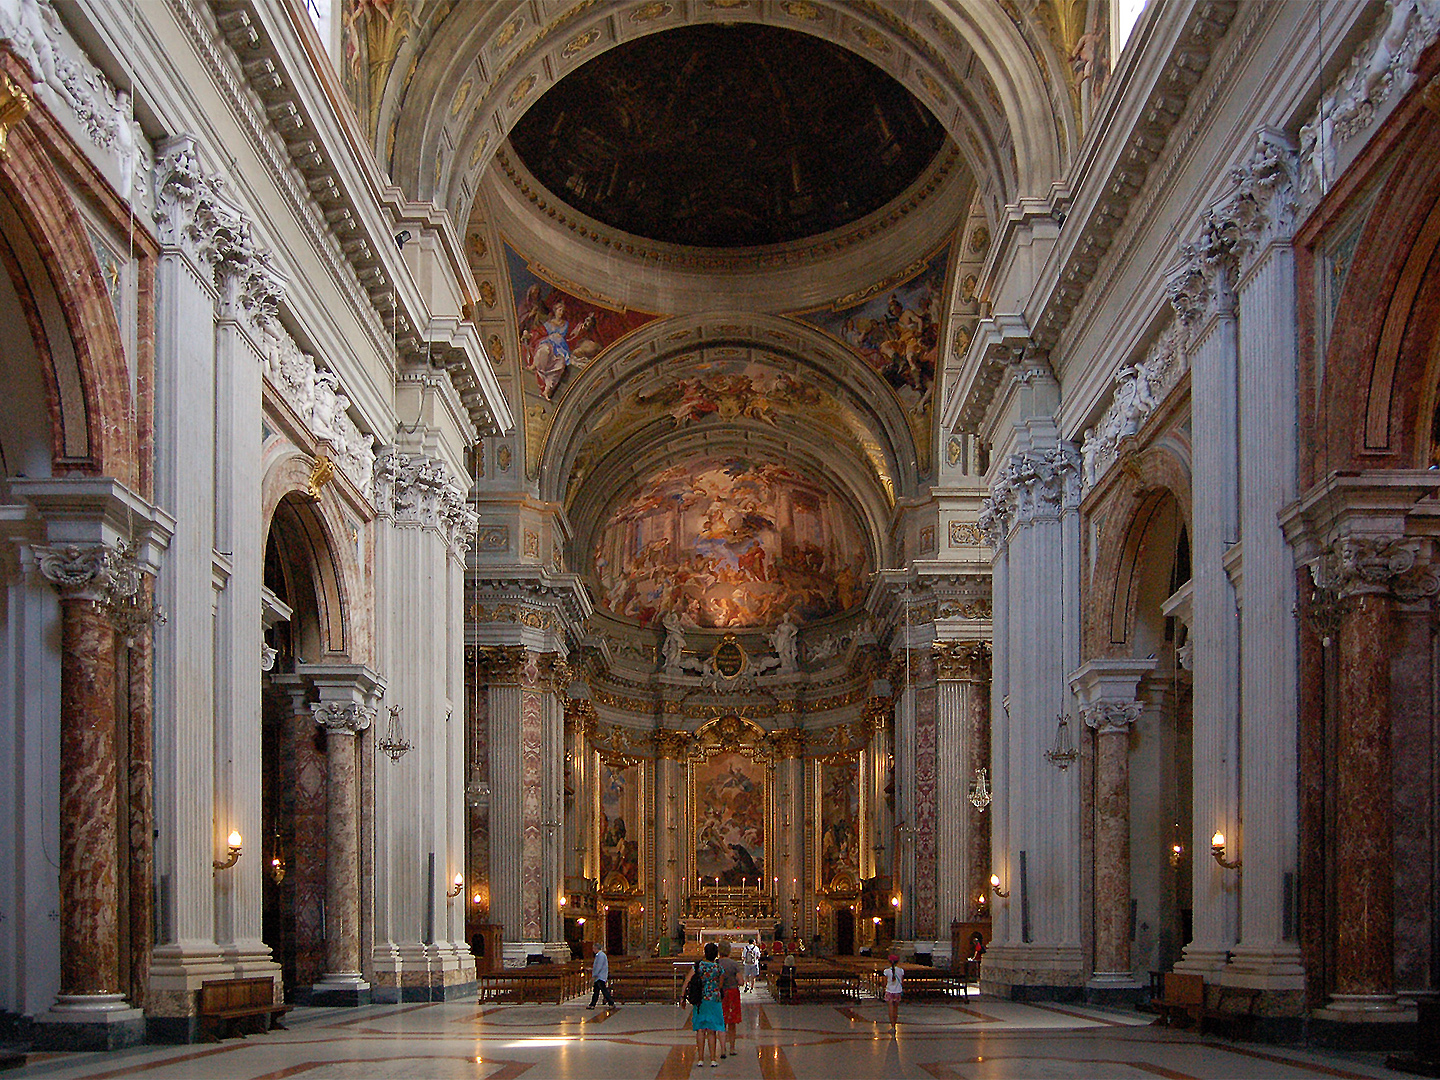 Kerk van Sint-Ignatius. Rome, Itali., Church of Saint Ignatius, Rome, Italy